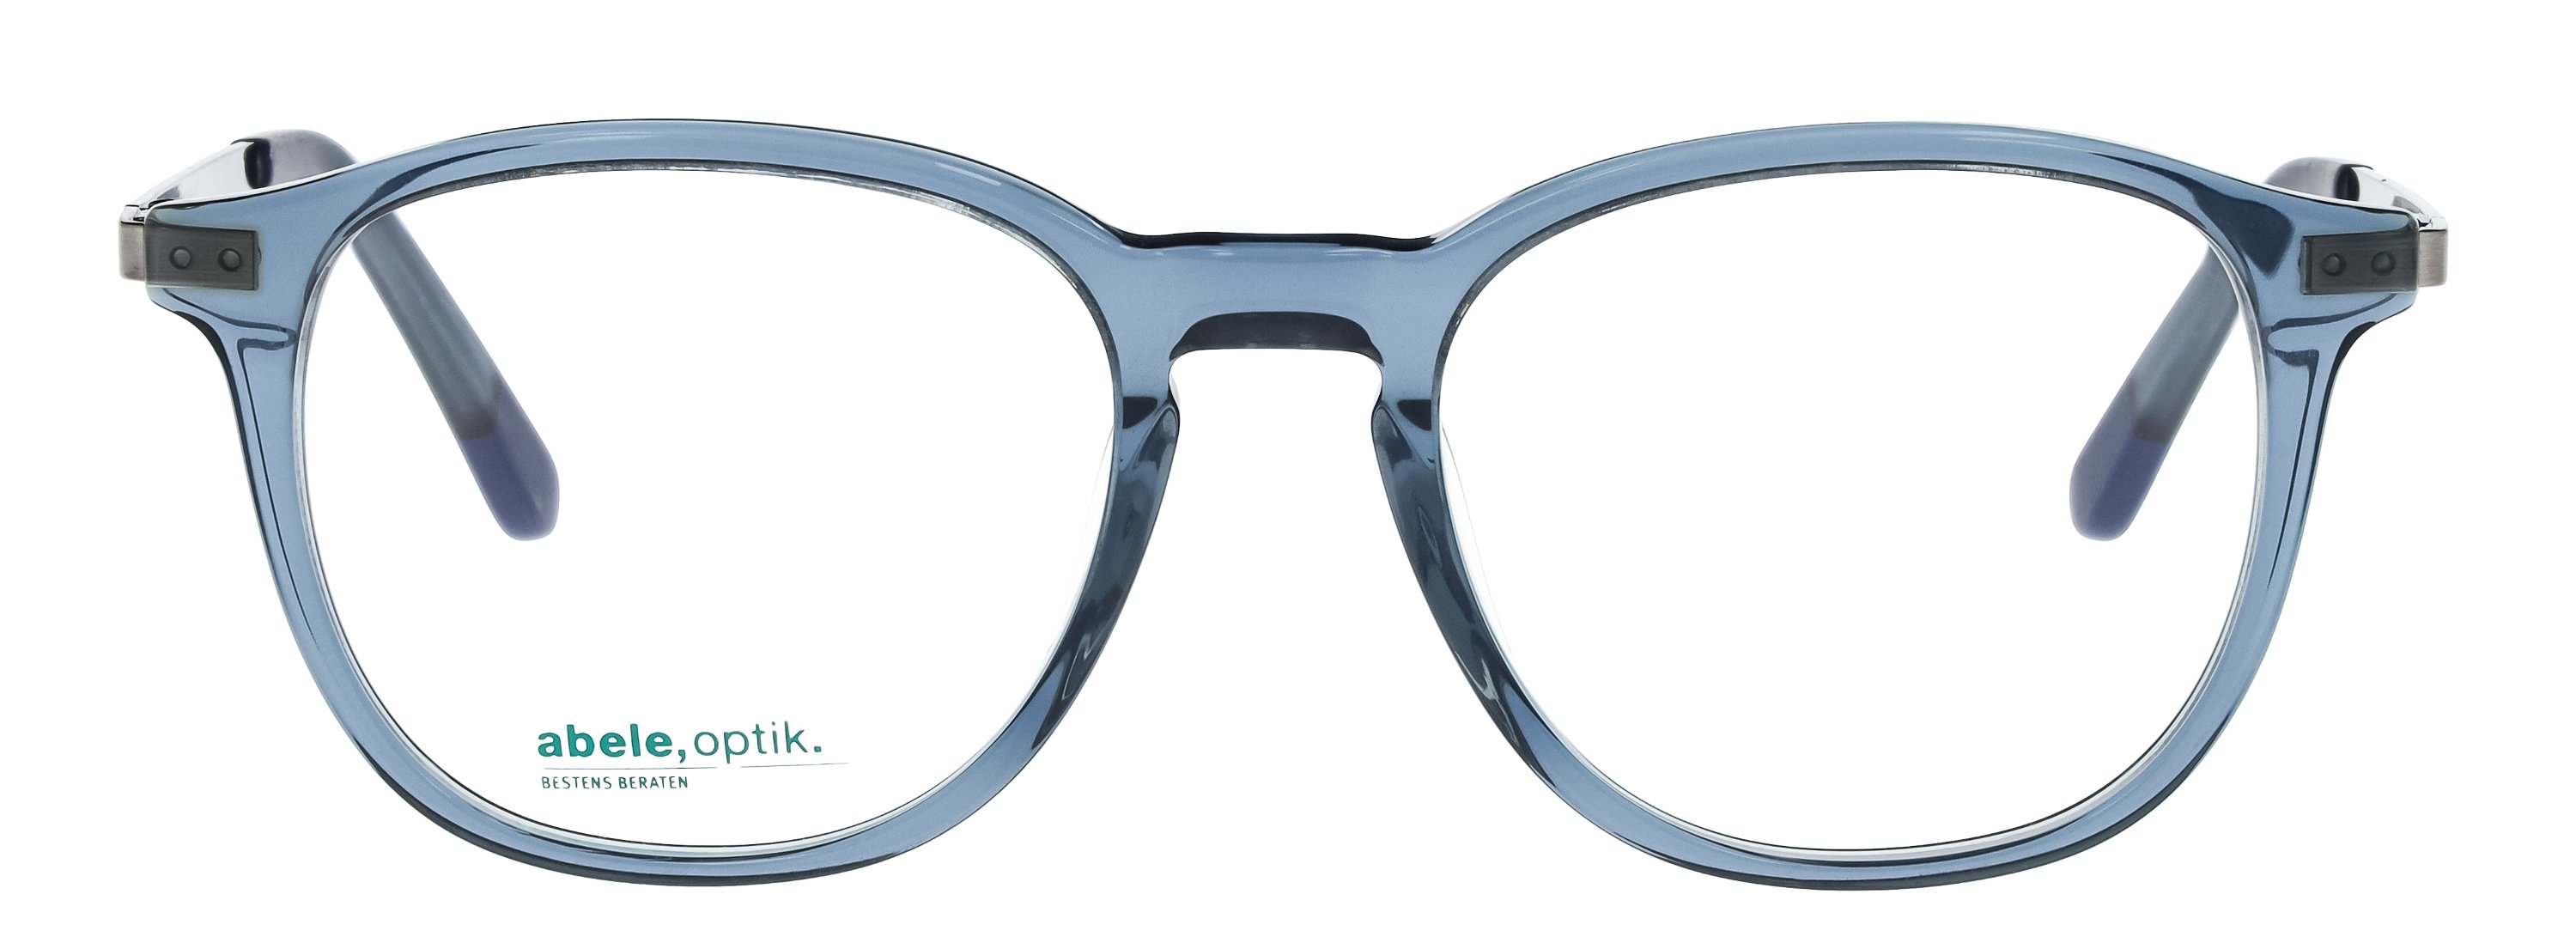 Das Bild zeigt die Korrektionsbrille 144661 von der Marke Abele Optik in blau transparent.